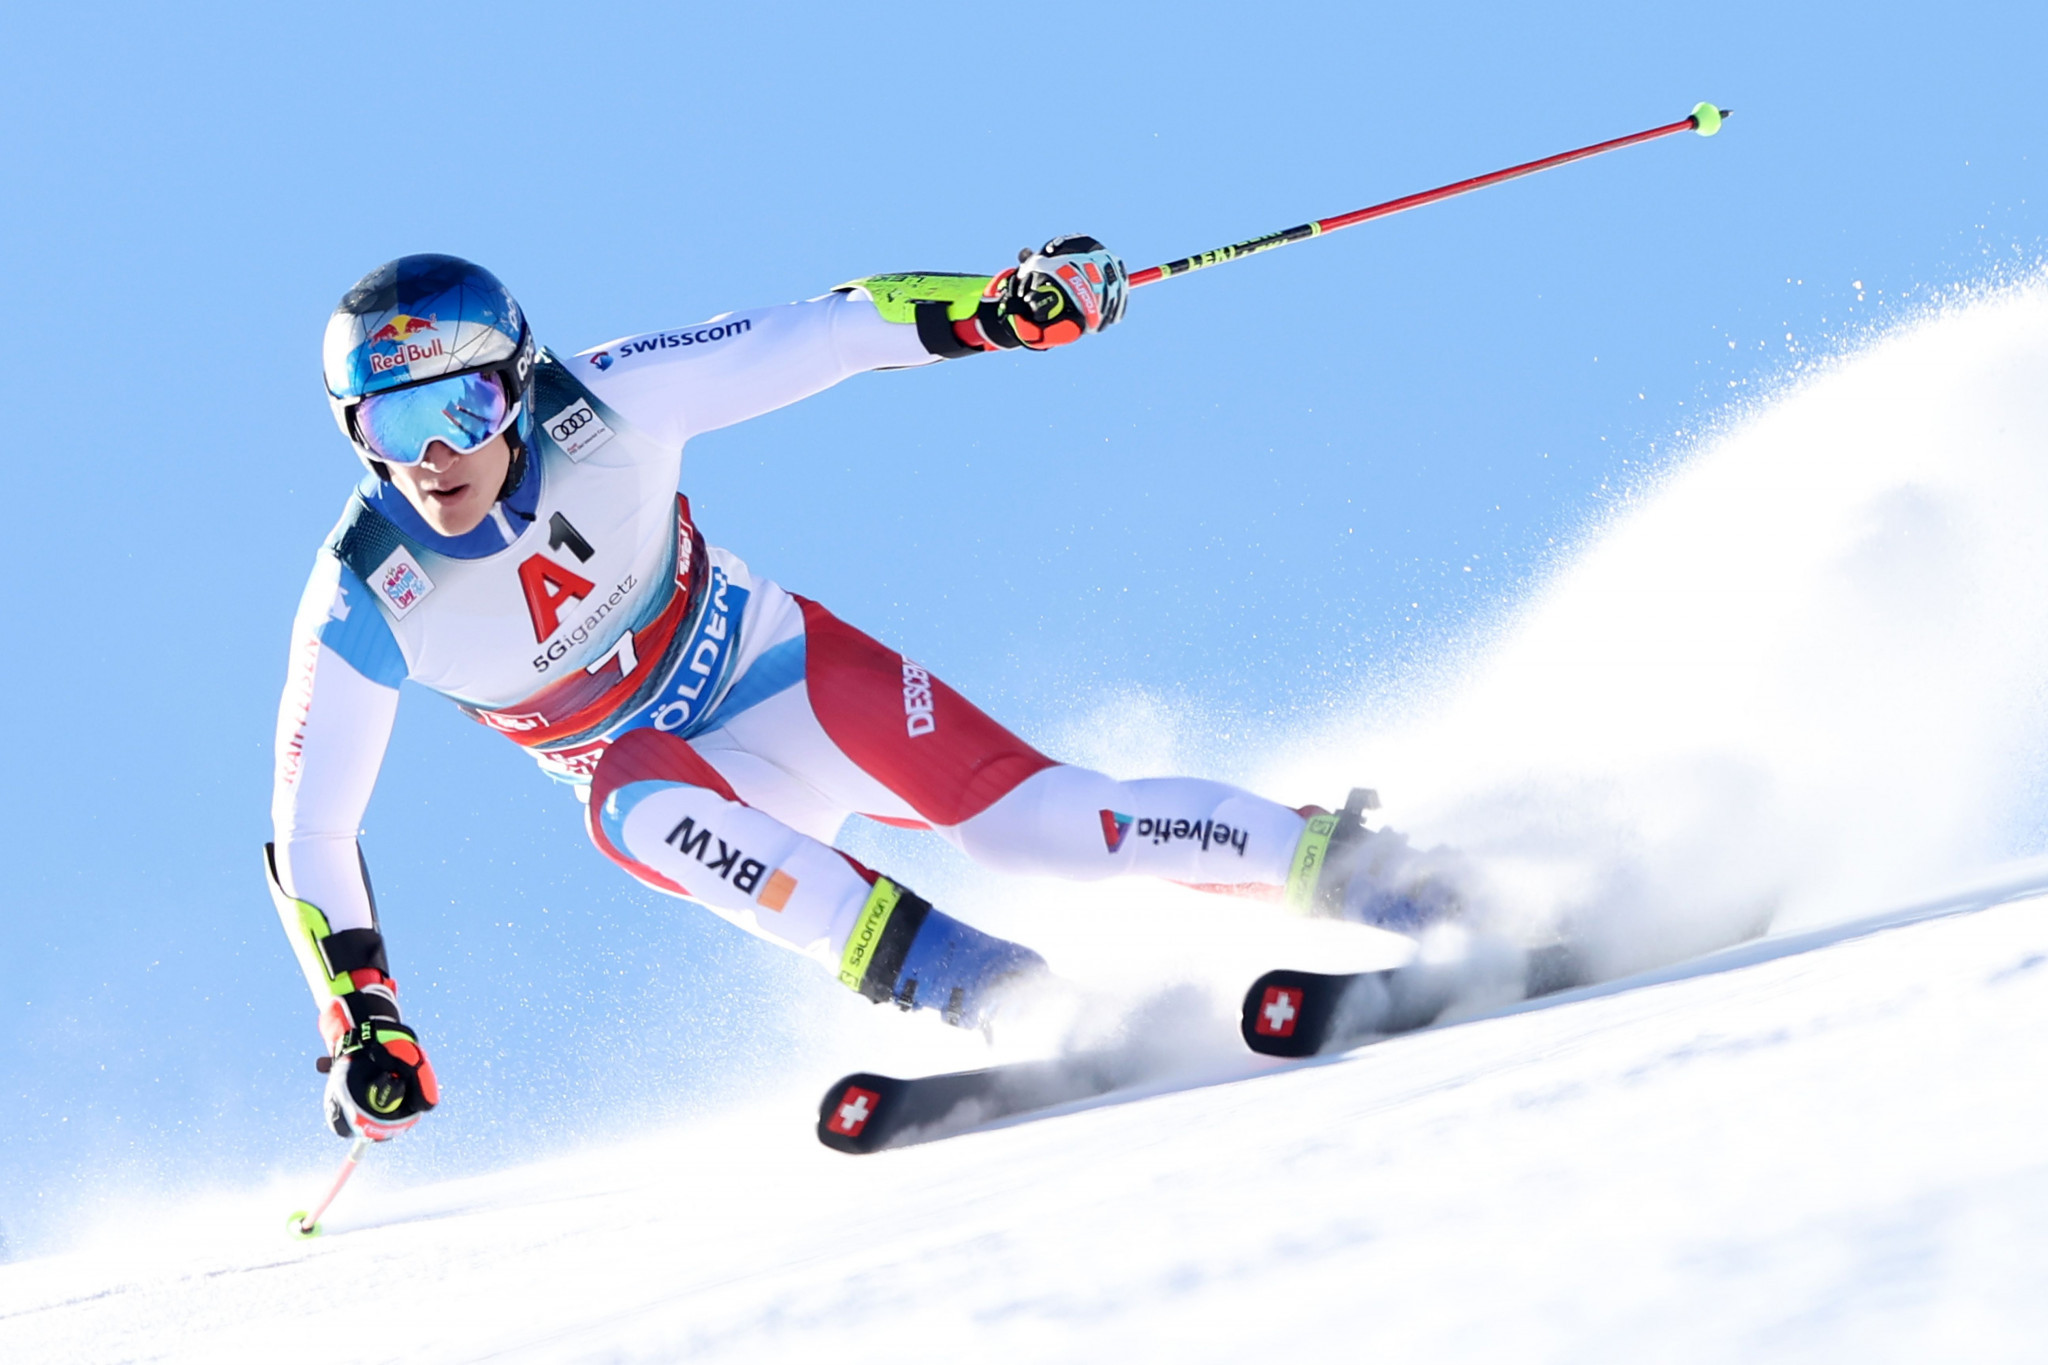 Men's FIS Alpine Ski World Cup returns in Adelboden after Zagreb cancellation